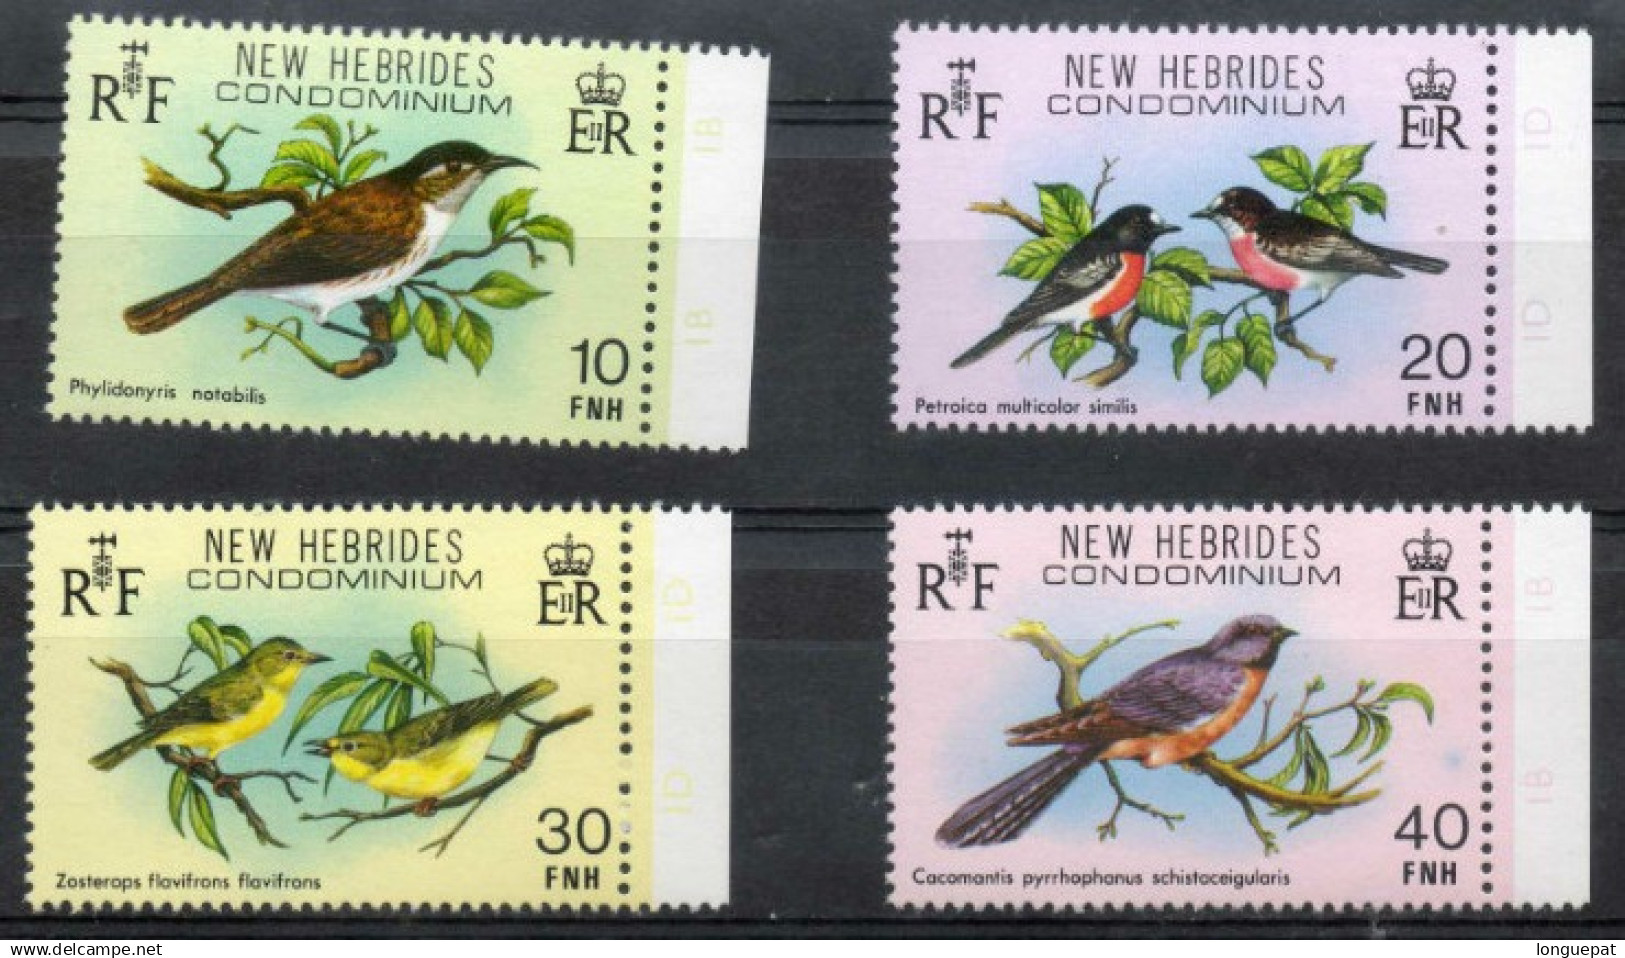 NOUVELLES-HEBRIDES : Oiseaux (passereaux) : Miro écérlate, Meliphage, Vanuatu Blanc Des Yeux, Etc) - Anglaiss - Unused Stamps